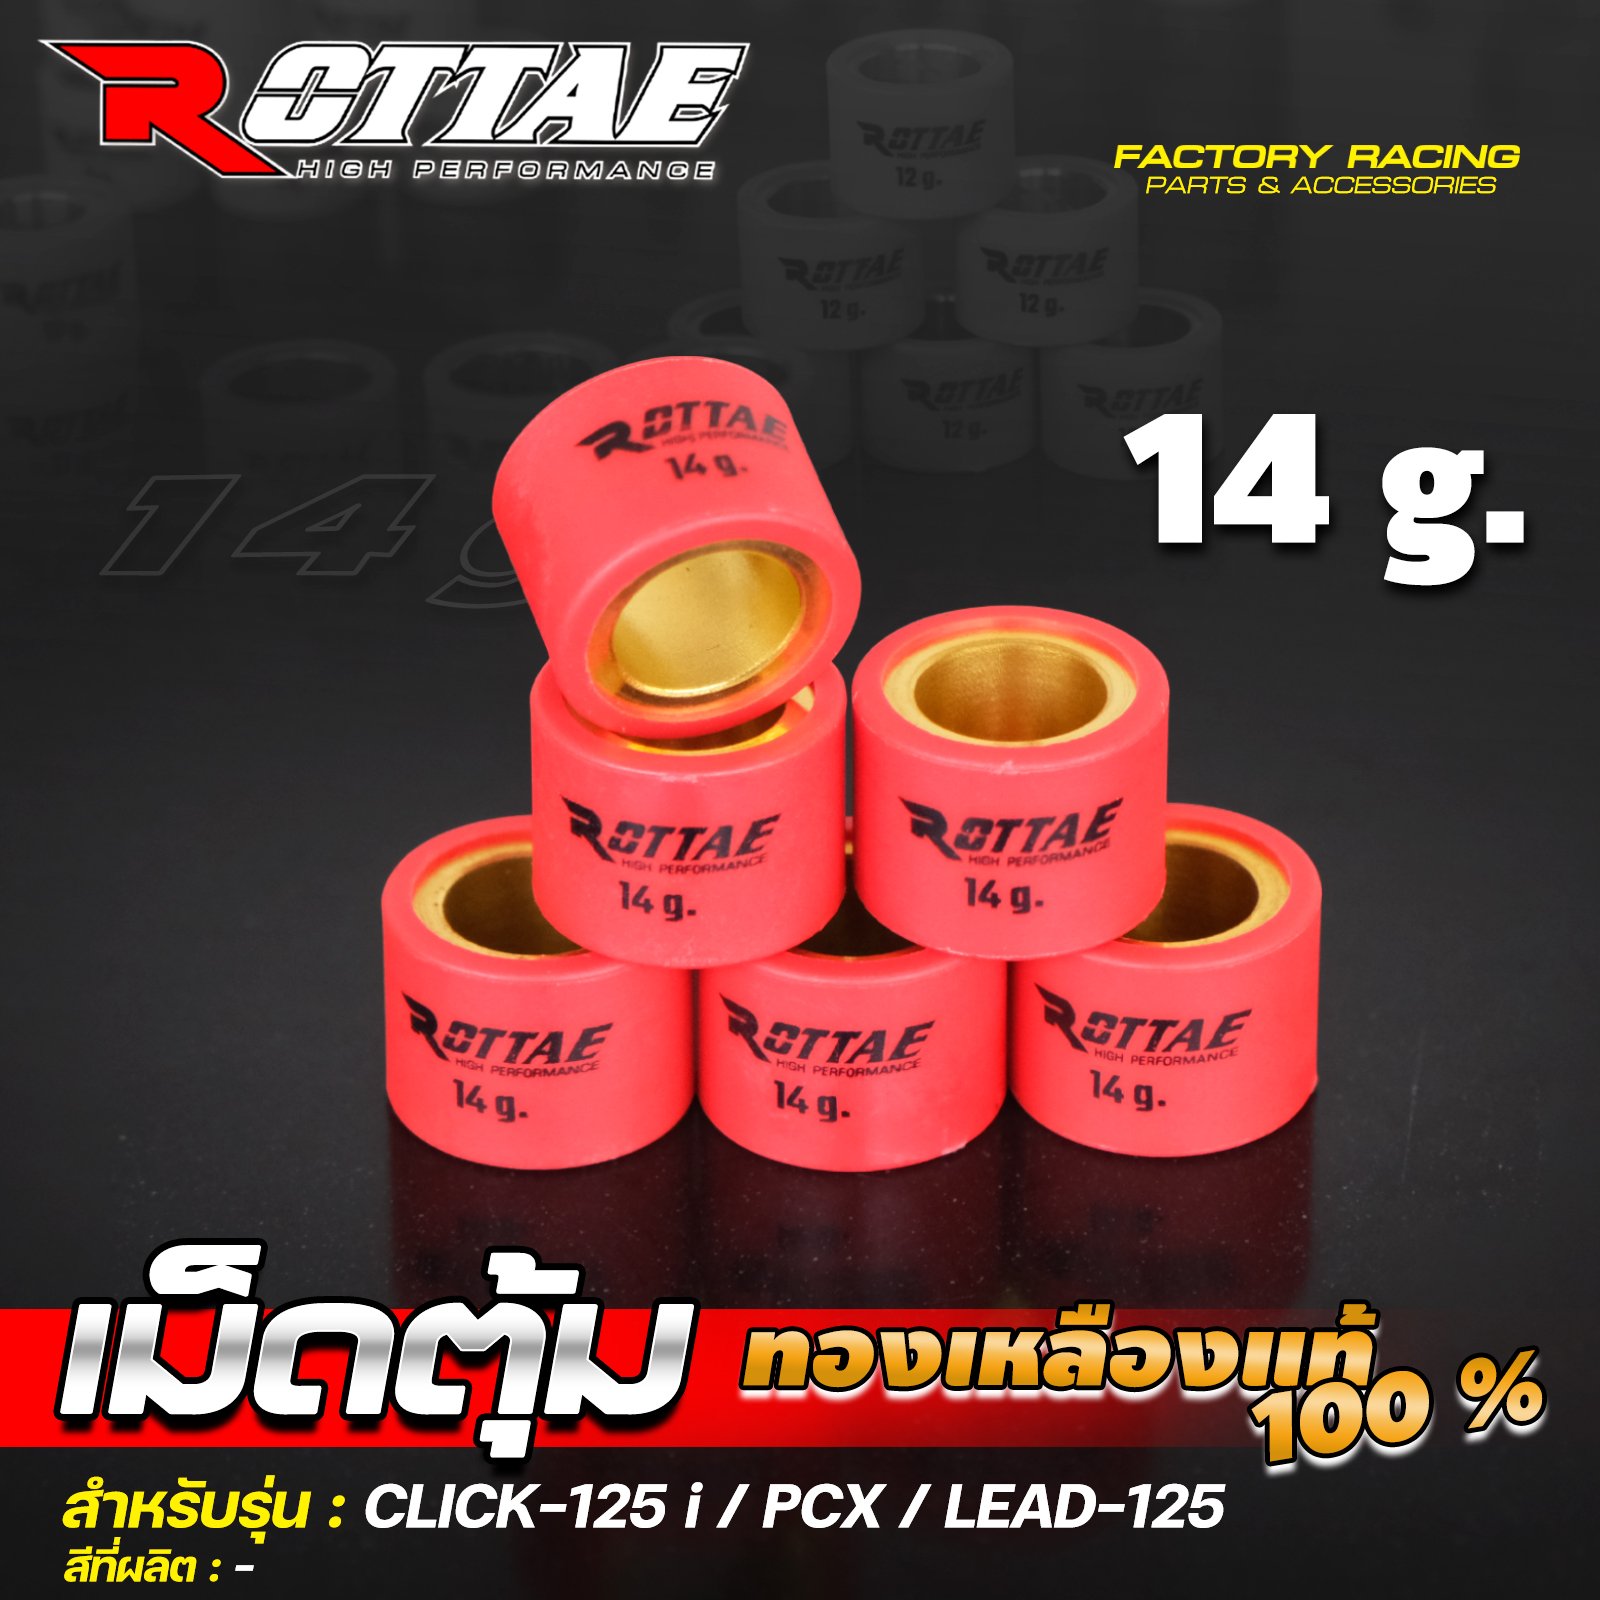 เม็ดตุ้ม (ทองเหลืองแท้ 100%) 14 g. #CLICK-125 / PCX / LEAD-125 ROTTAE